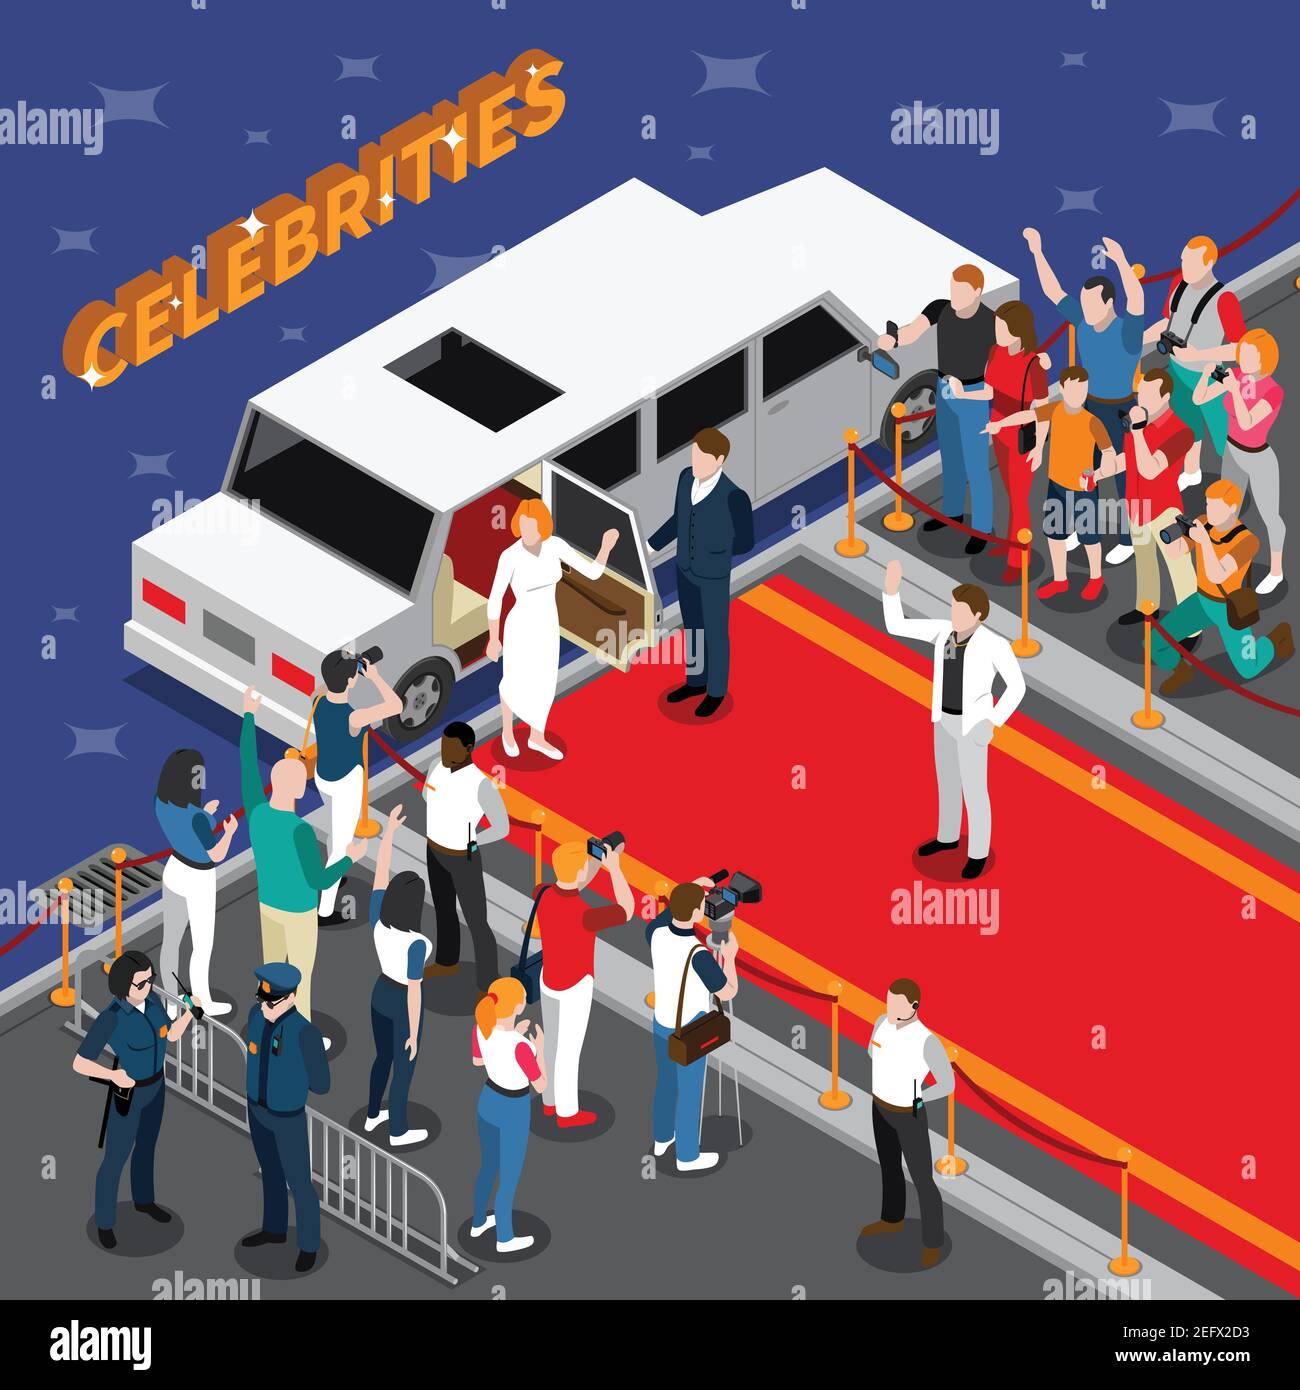 Celebrità su tappeto rosso composizione isometrica con guardie limousine bianche ammiratori fotografi giornalisti polizia illustrazione vettoriale 3d Illustrazione Vettoriale